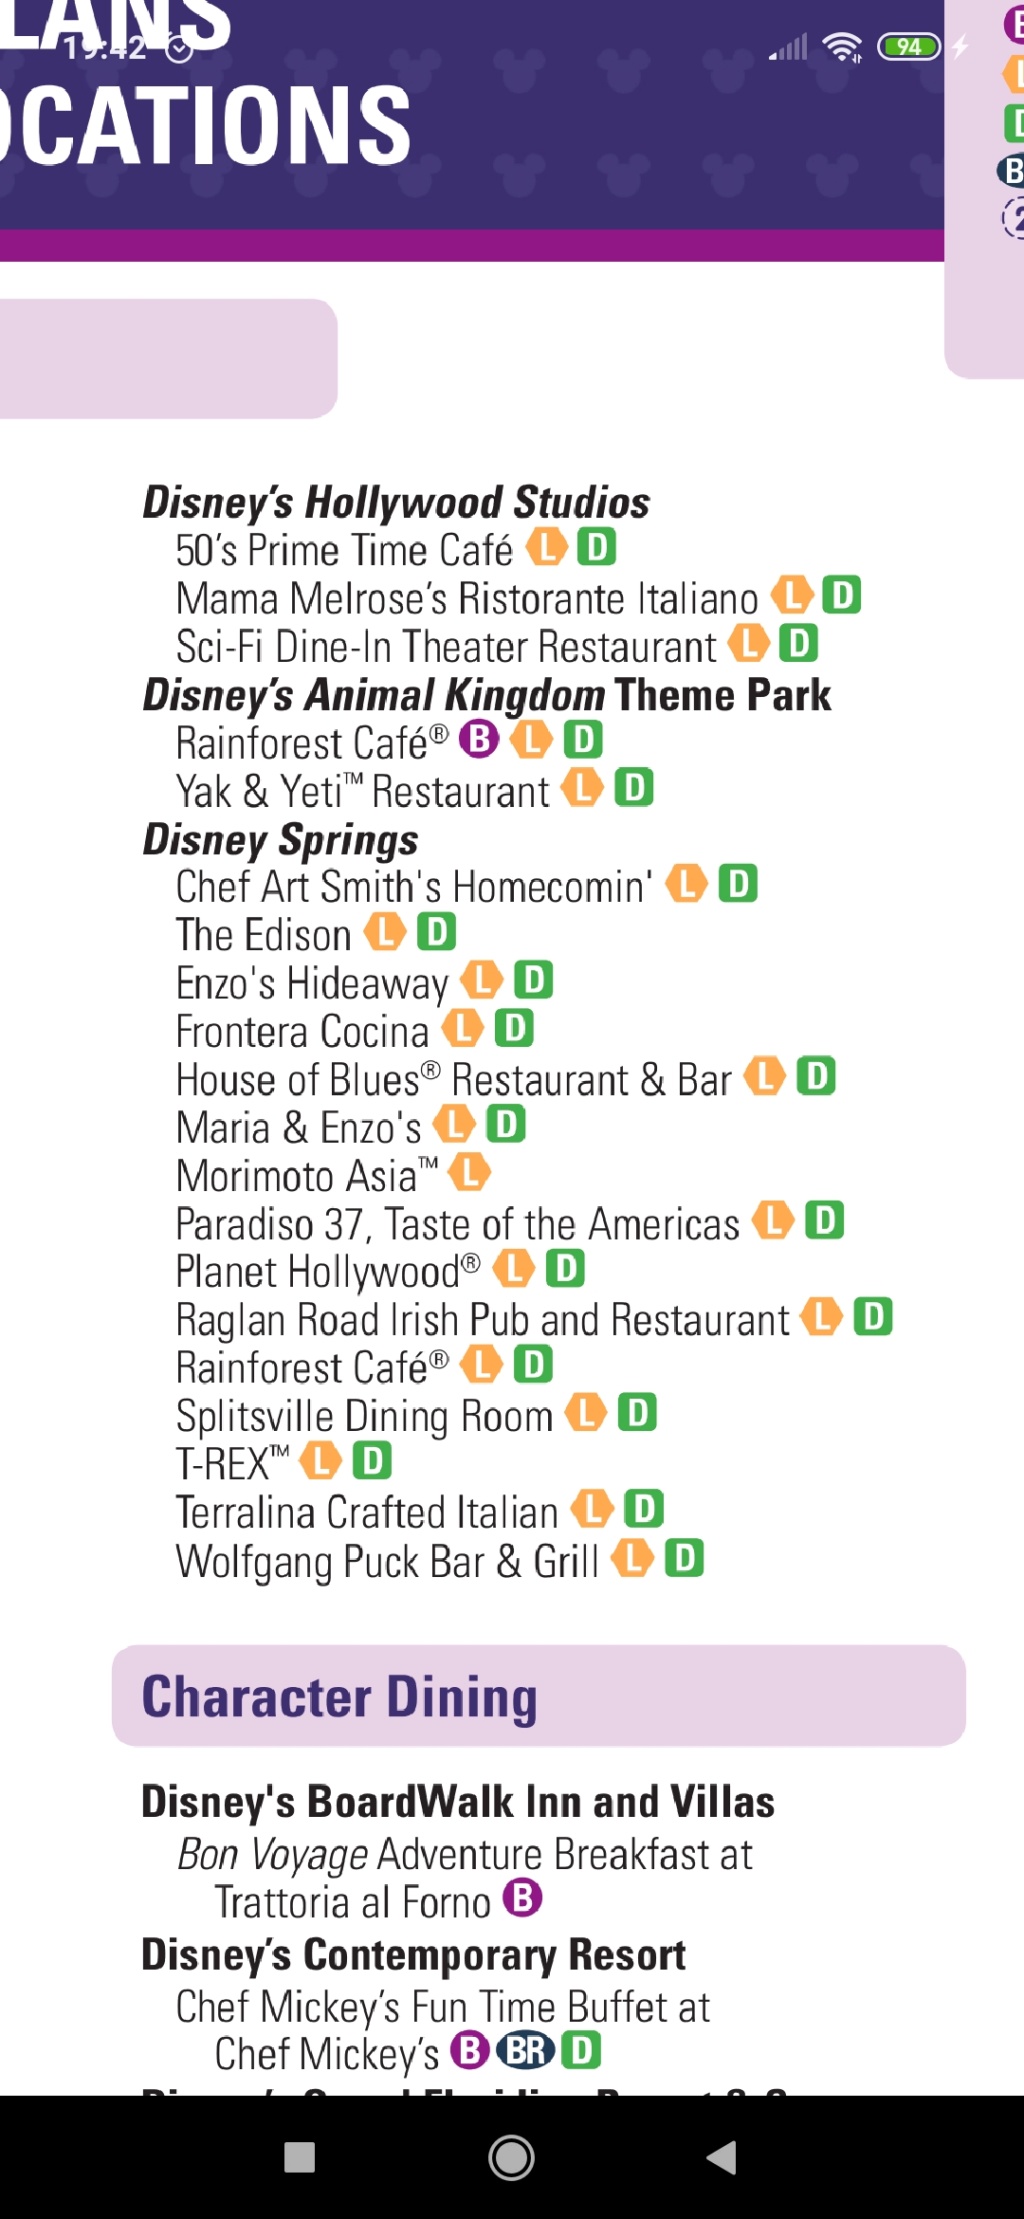 2020 Dining Plan- han quitado varios locales y restaurantes no? Screen10